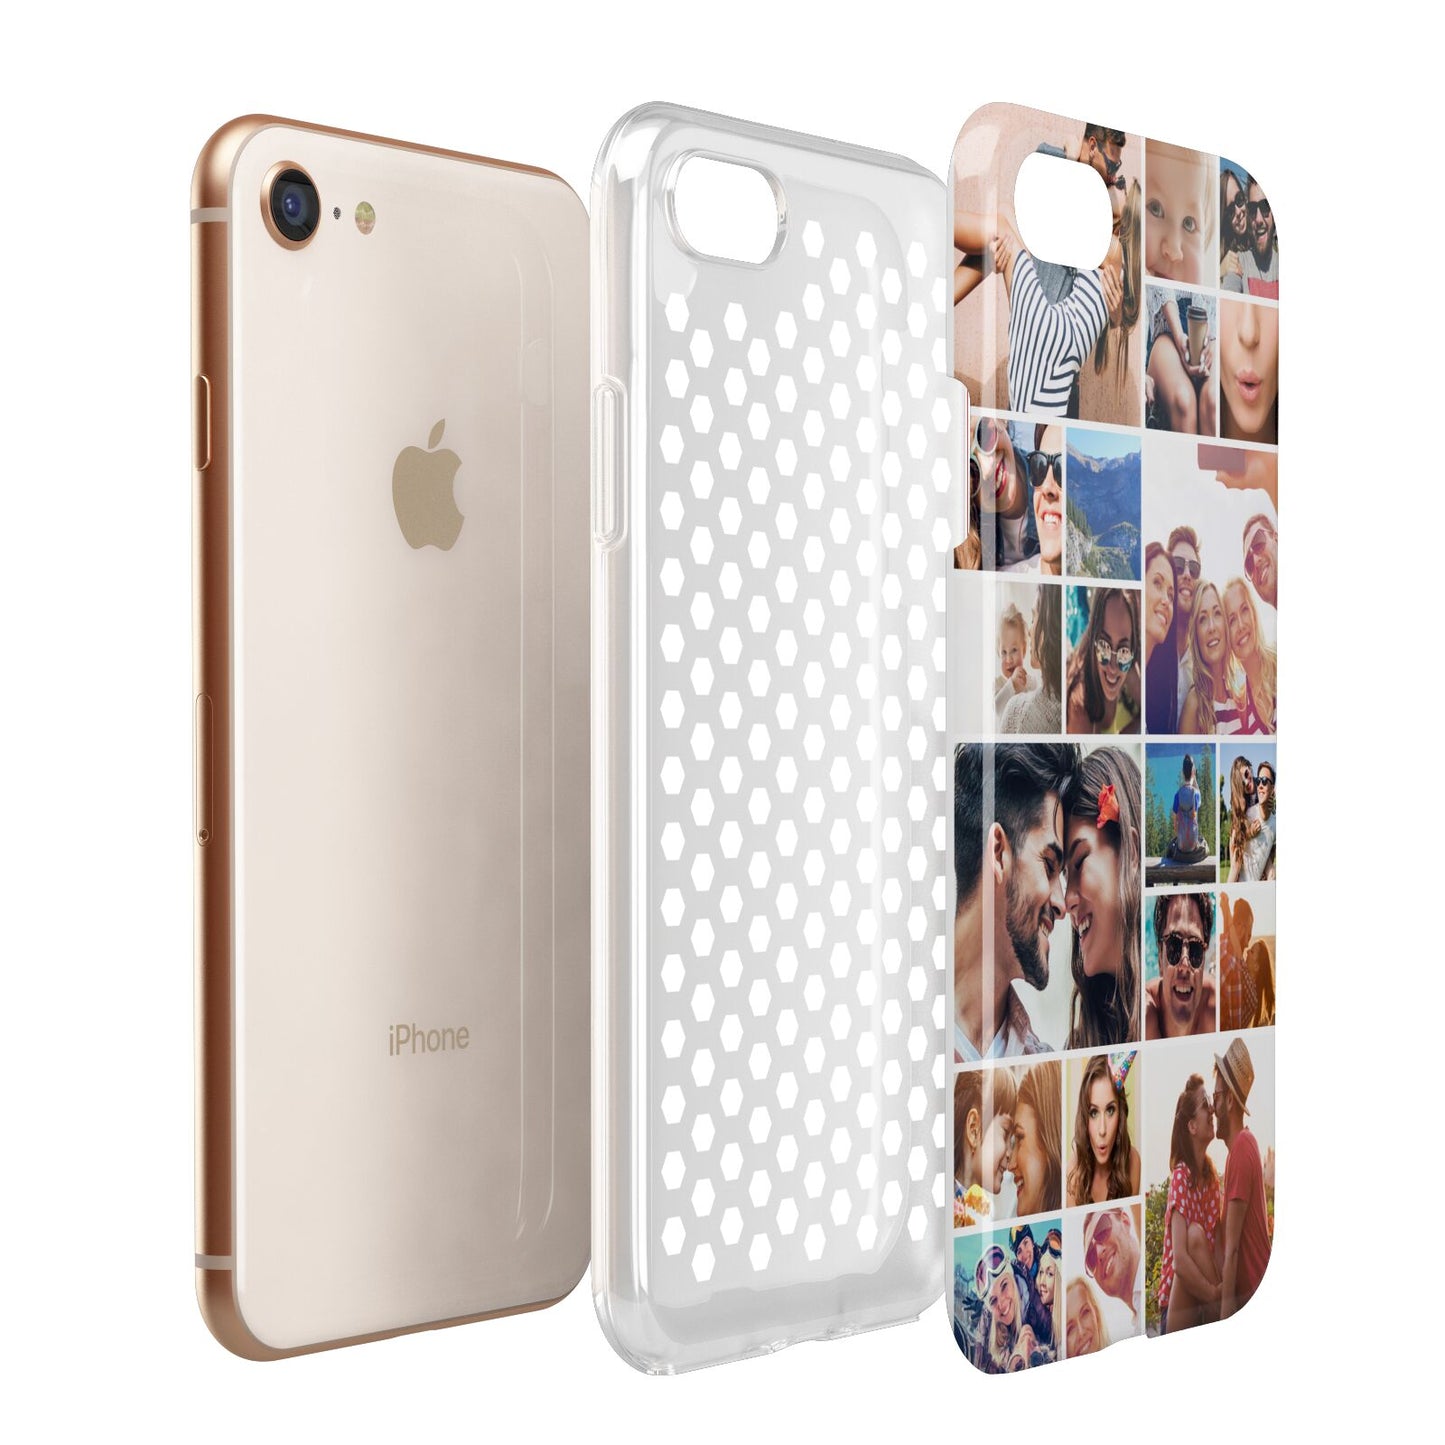 Photo Grid Apple iPhone 7 8 3D Tough Case Expanded View